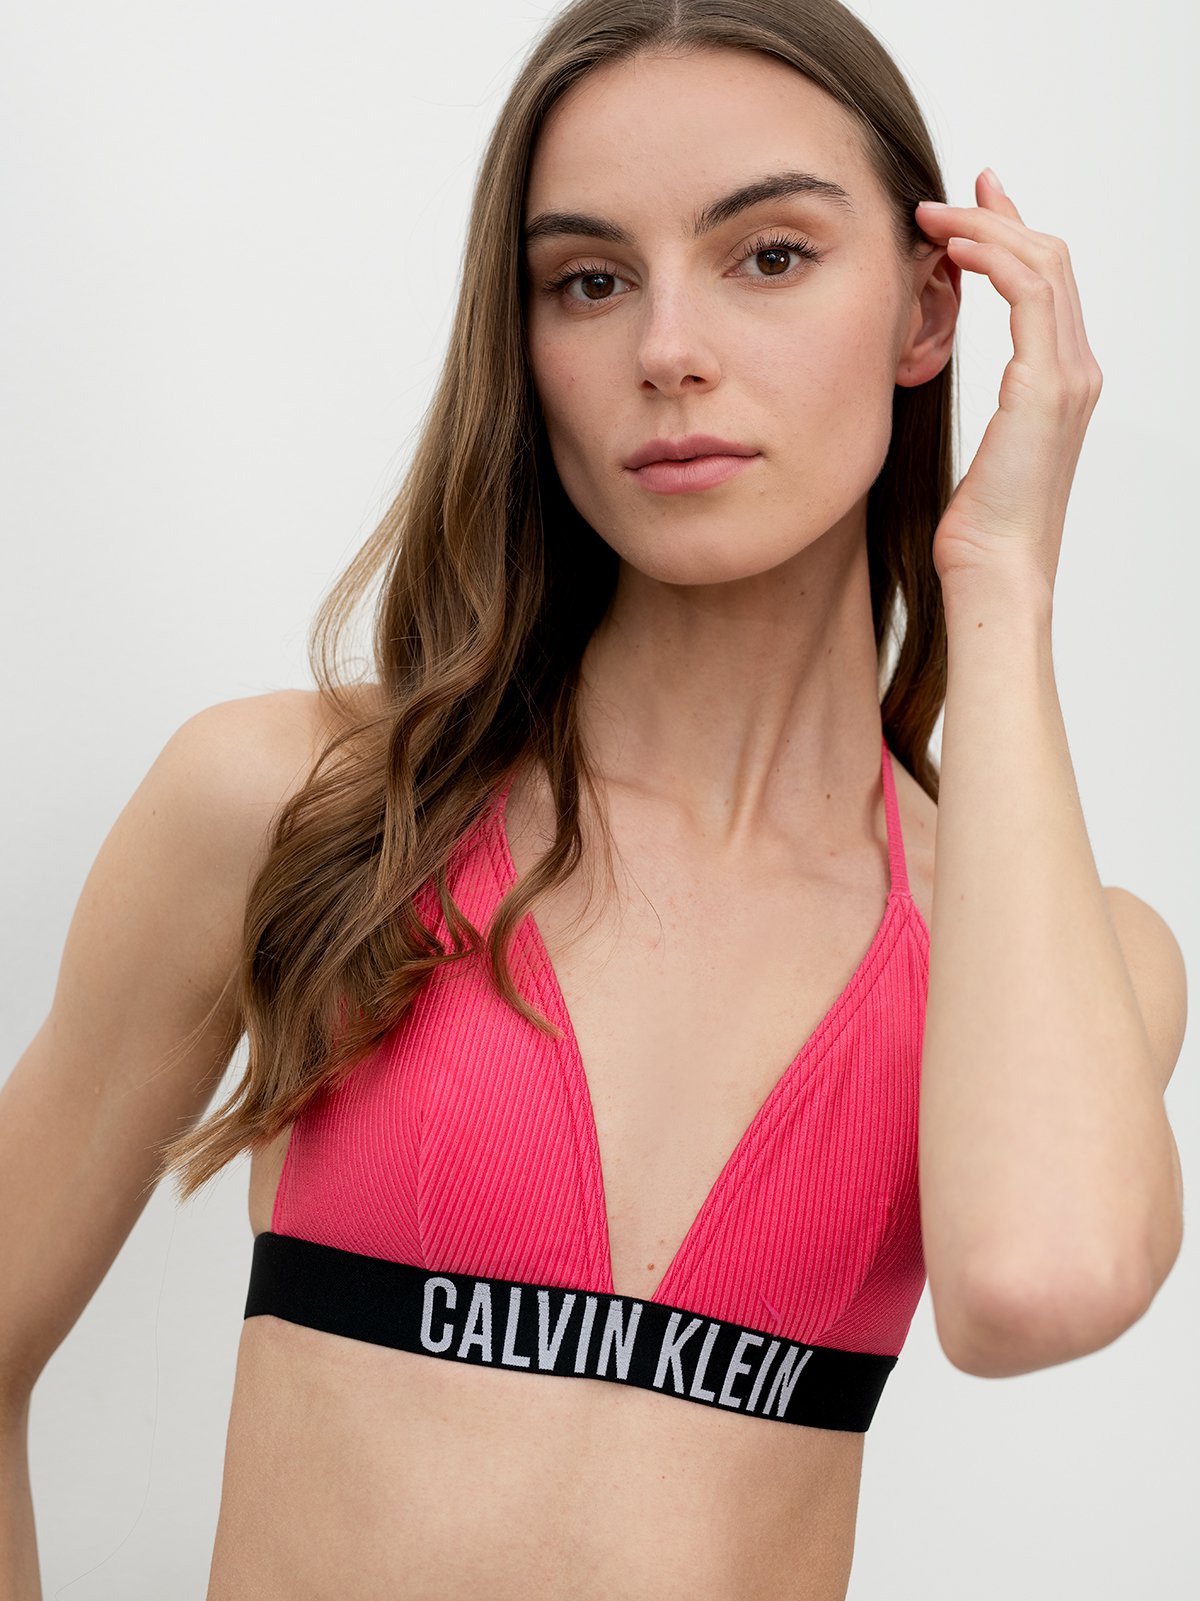 Women's swimwear tops pink Calvin Klein Underwear